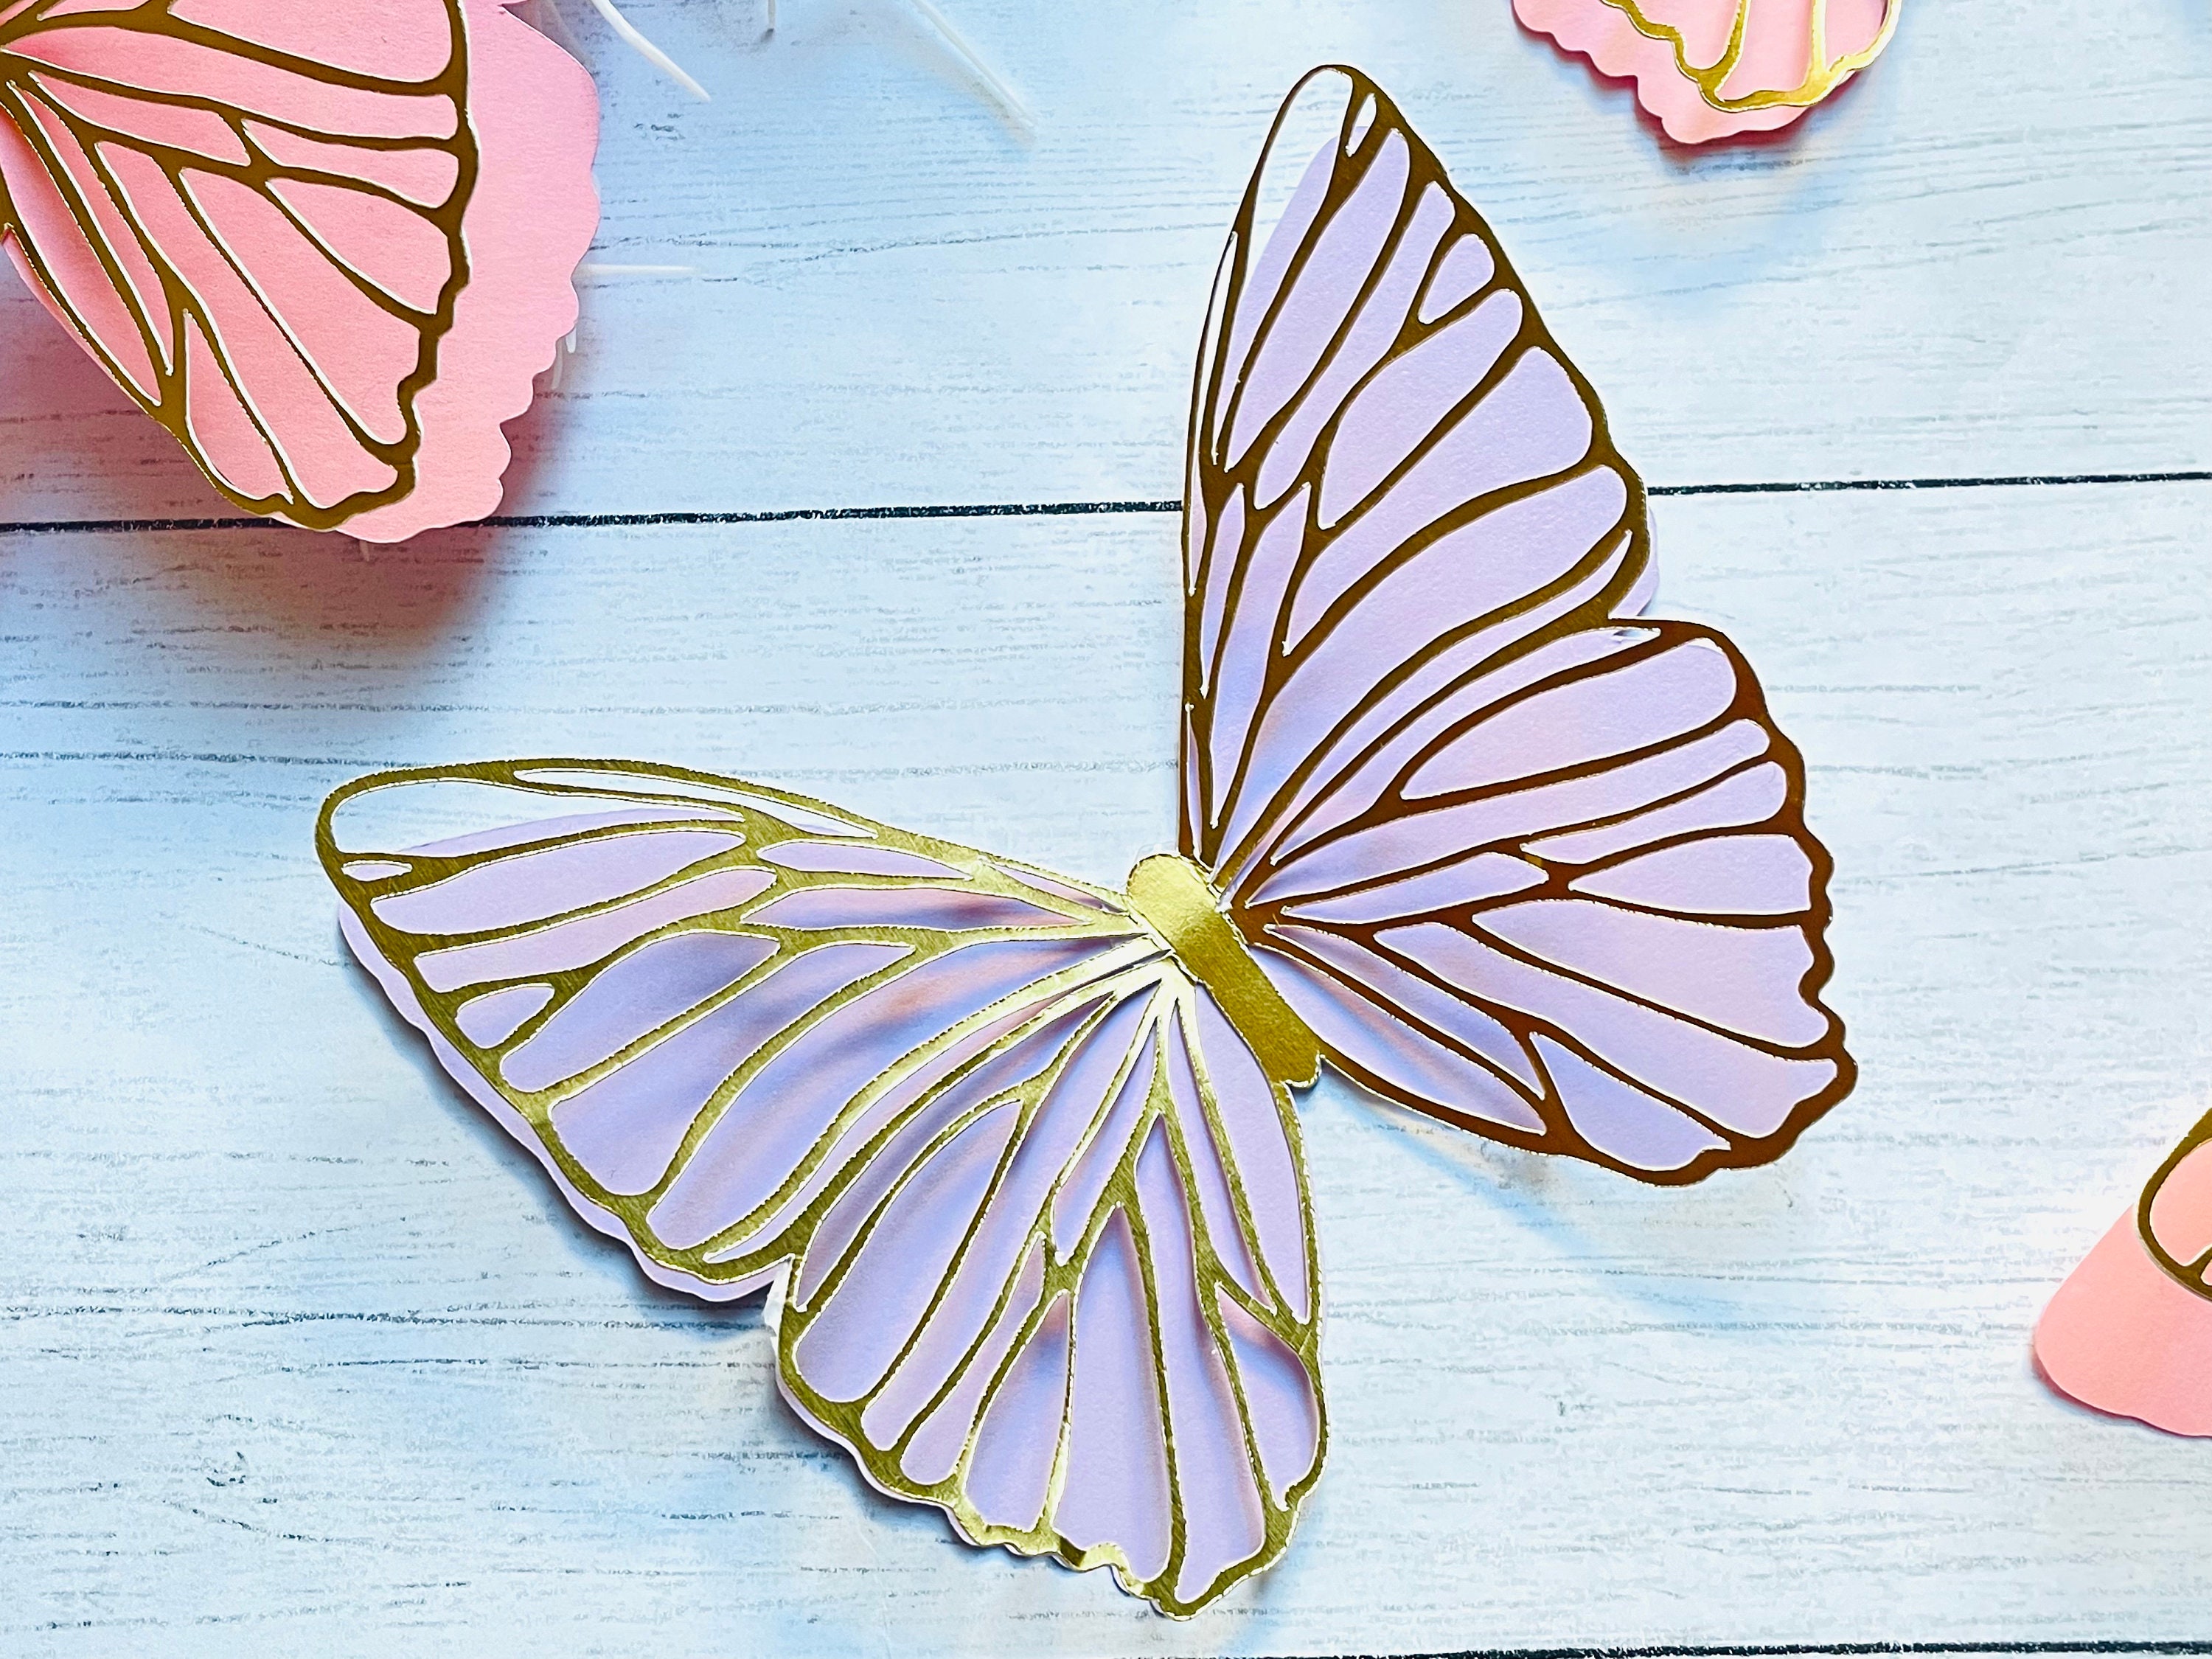 Paper Butterflies Cut Outs, Pink/Purple Set For Decorations - 58pcs Madanela